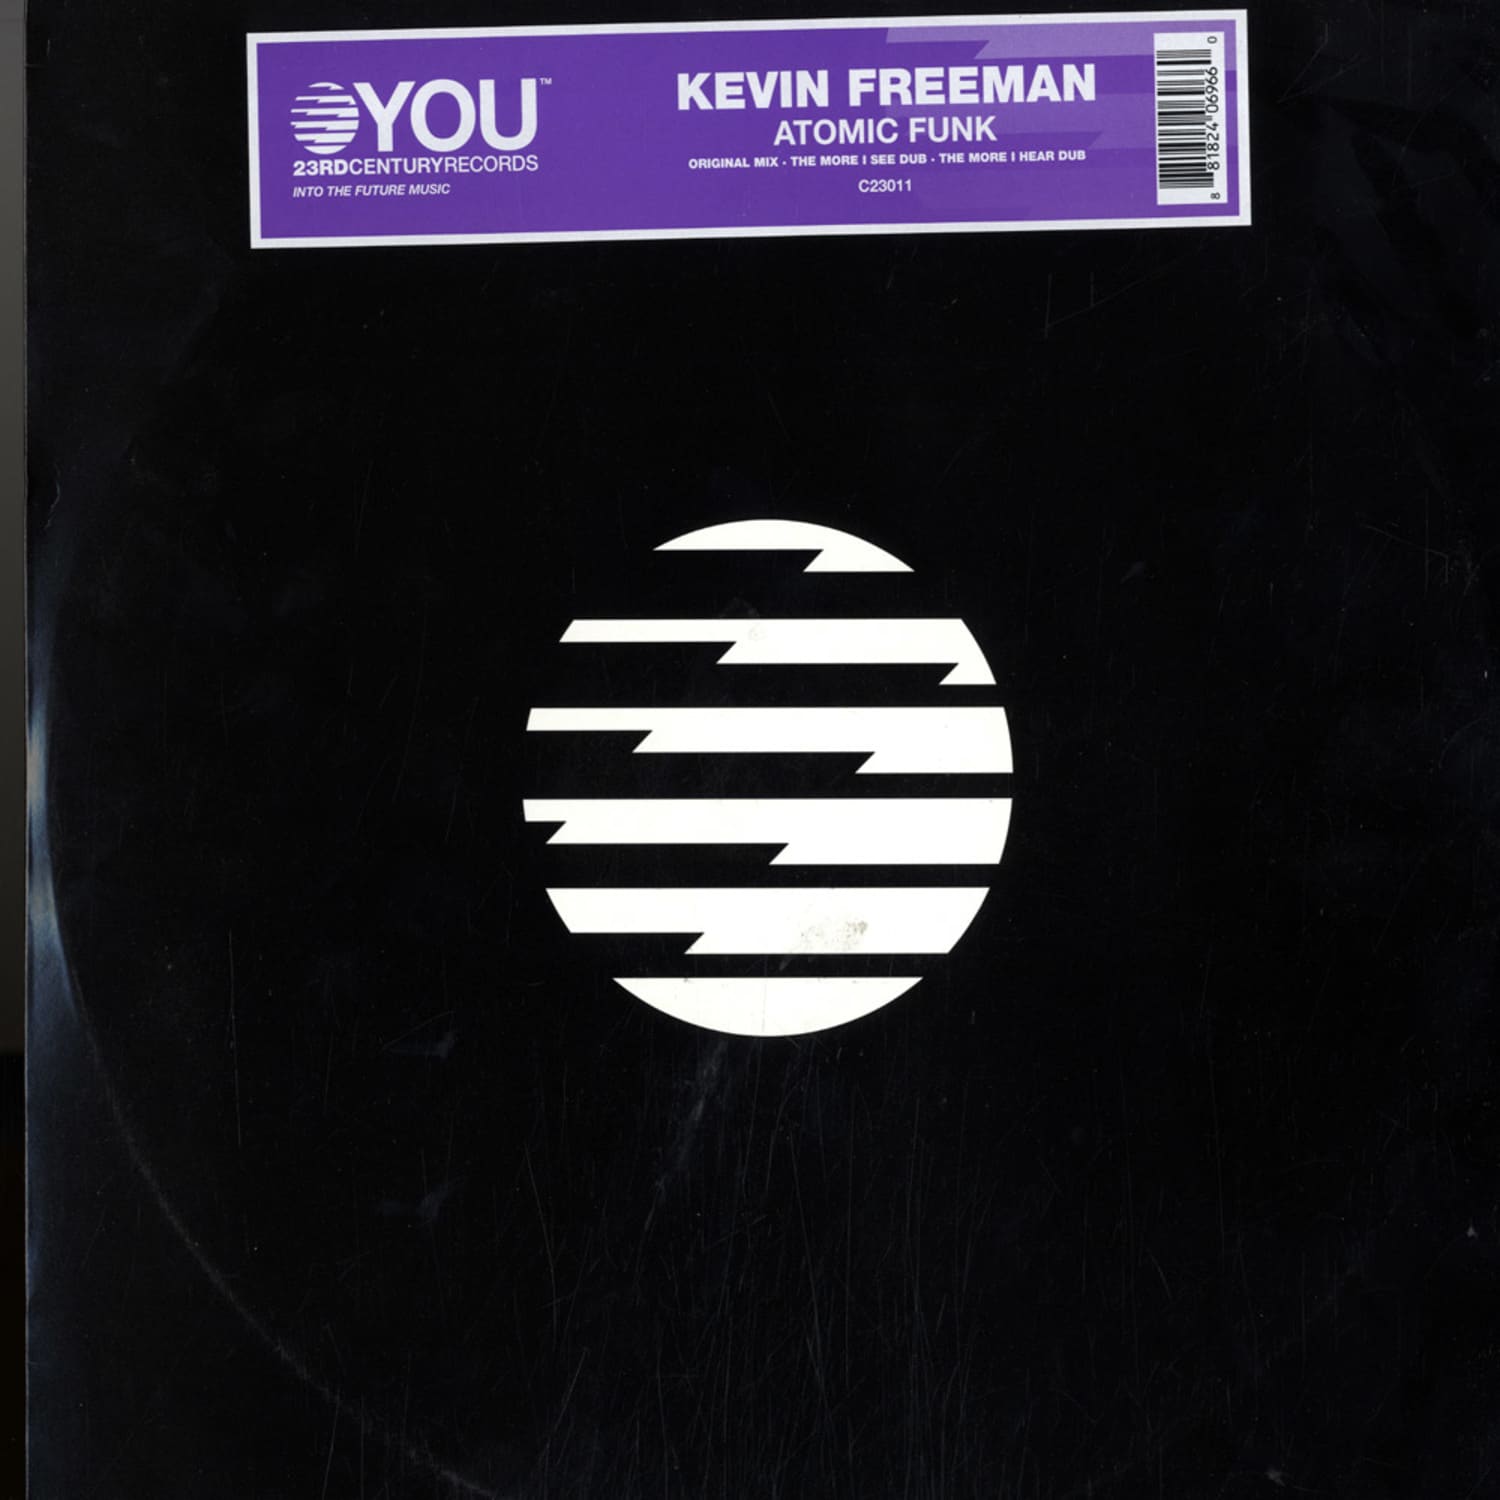 Kevin Freeman - ATOMIC FUNK